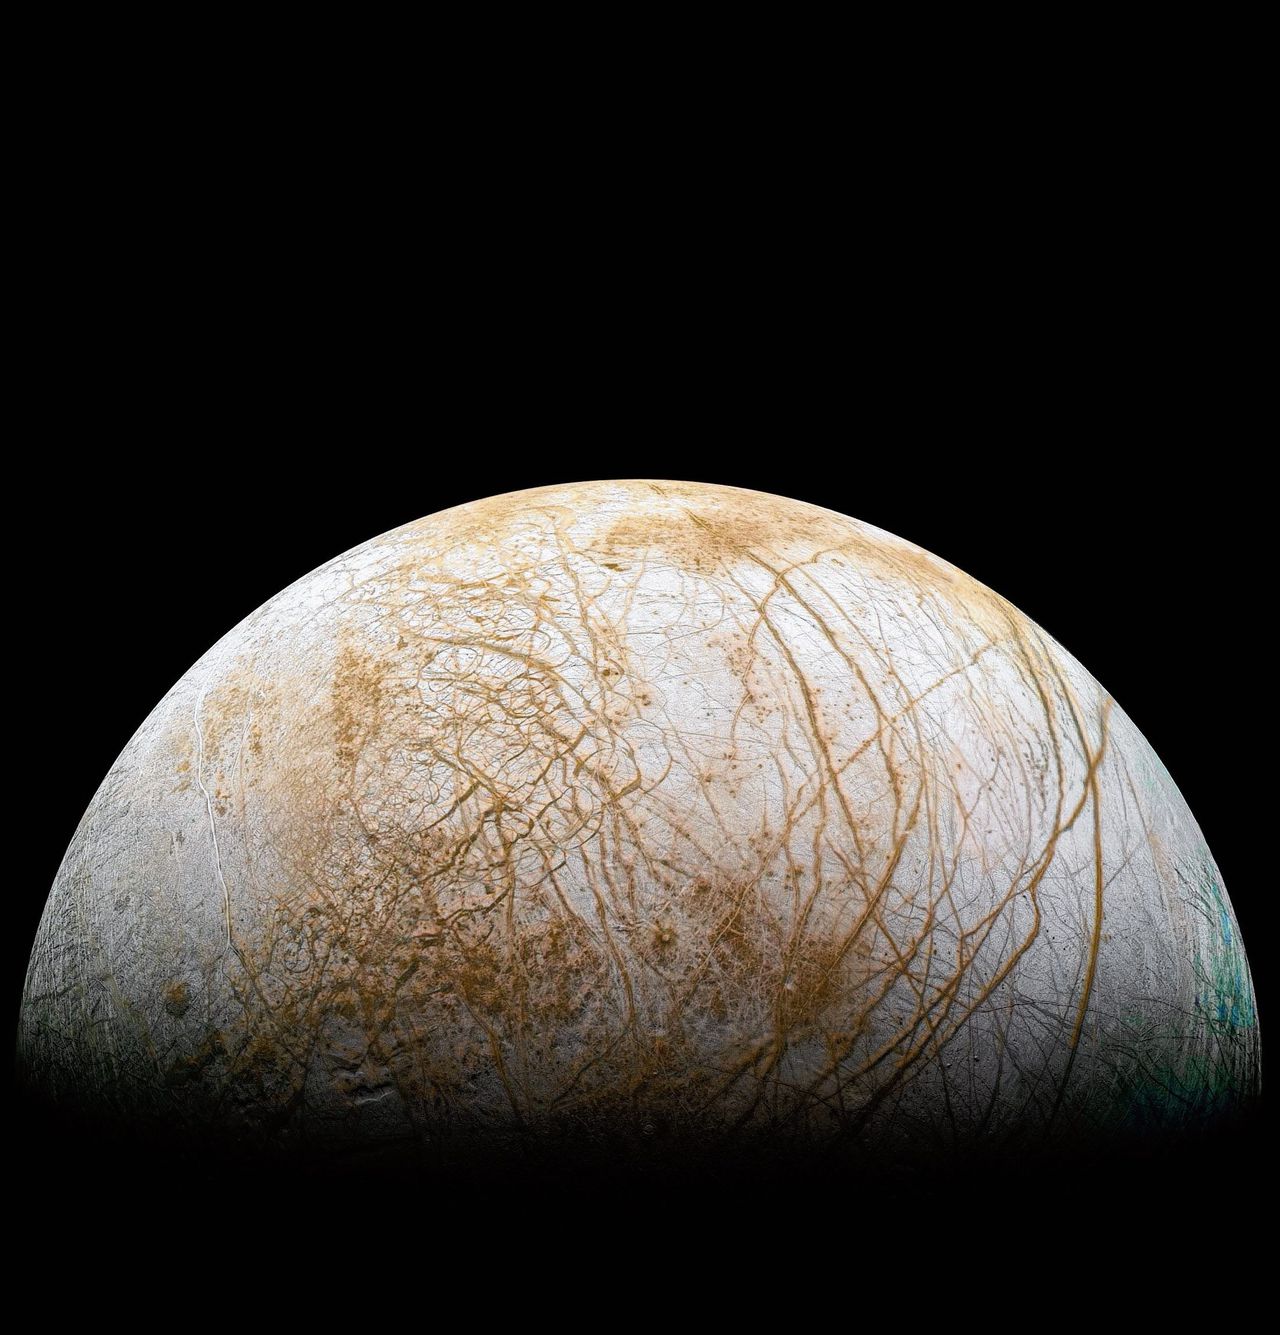 De ijsmaan Europa bij Jupiter zal bij opwarming waarschijnlijk nooit leefbaar worden omdat hij zijn water verliest.